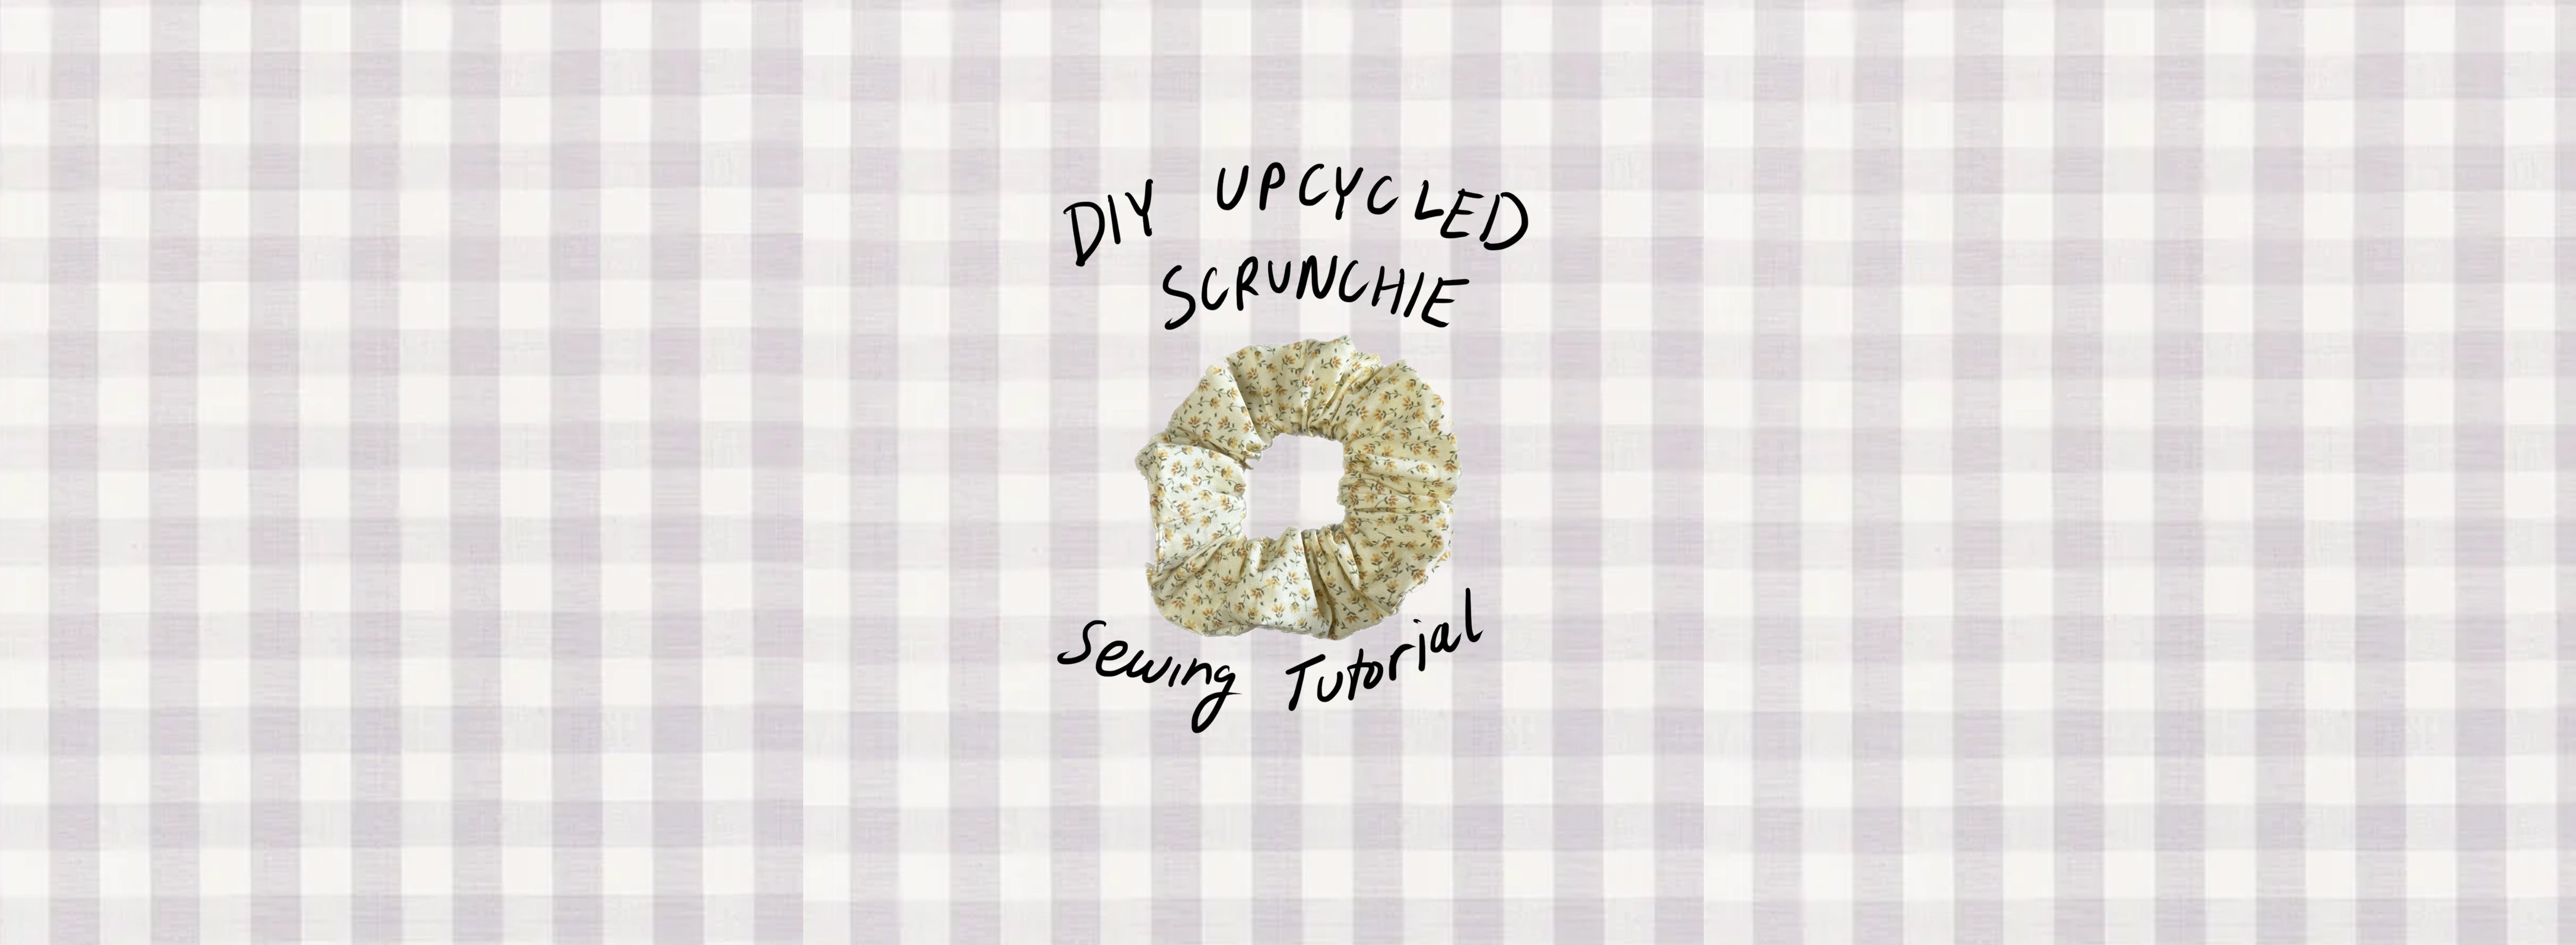 DIY Upcycled Scrunchie